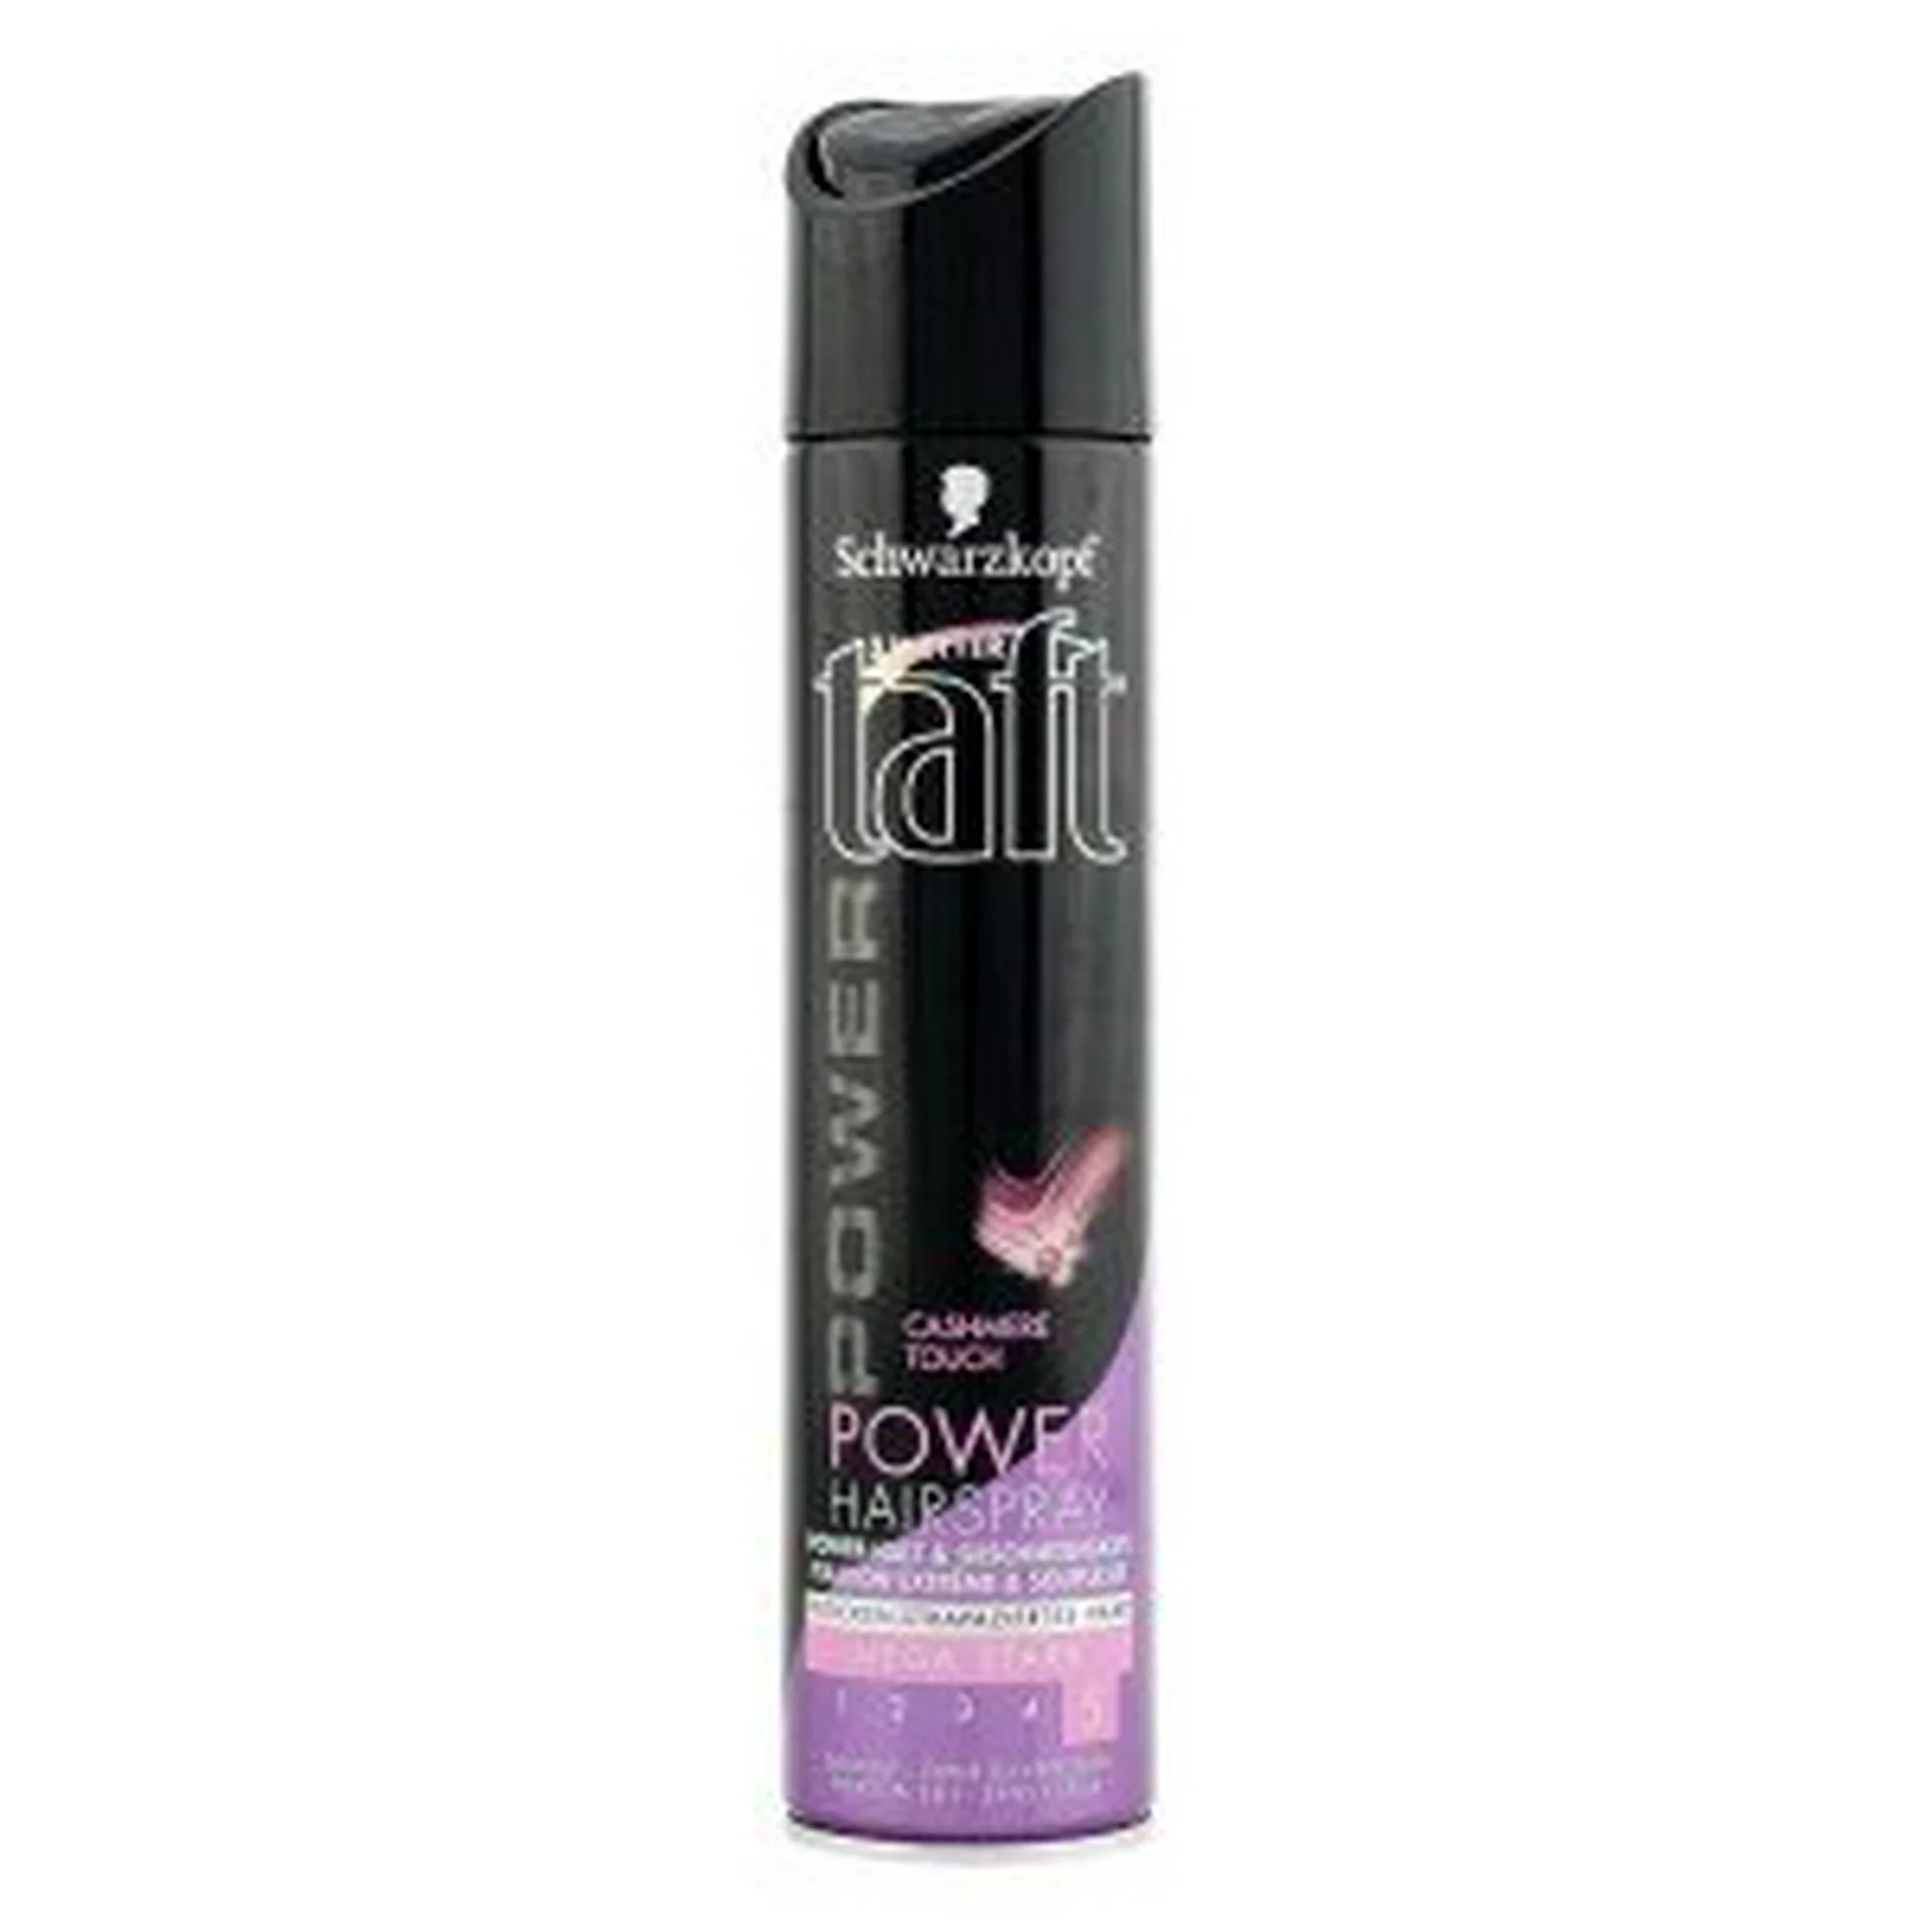 Taft hair spray GMTH3101